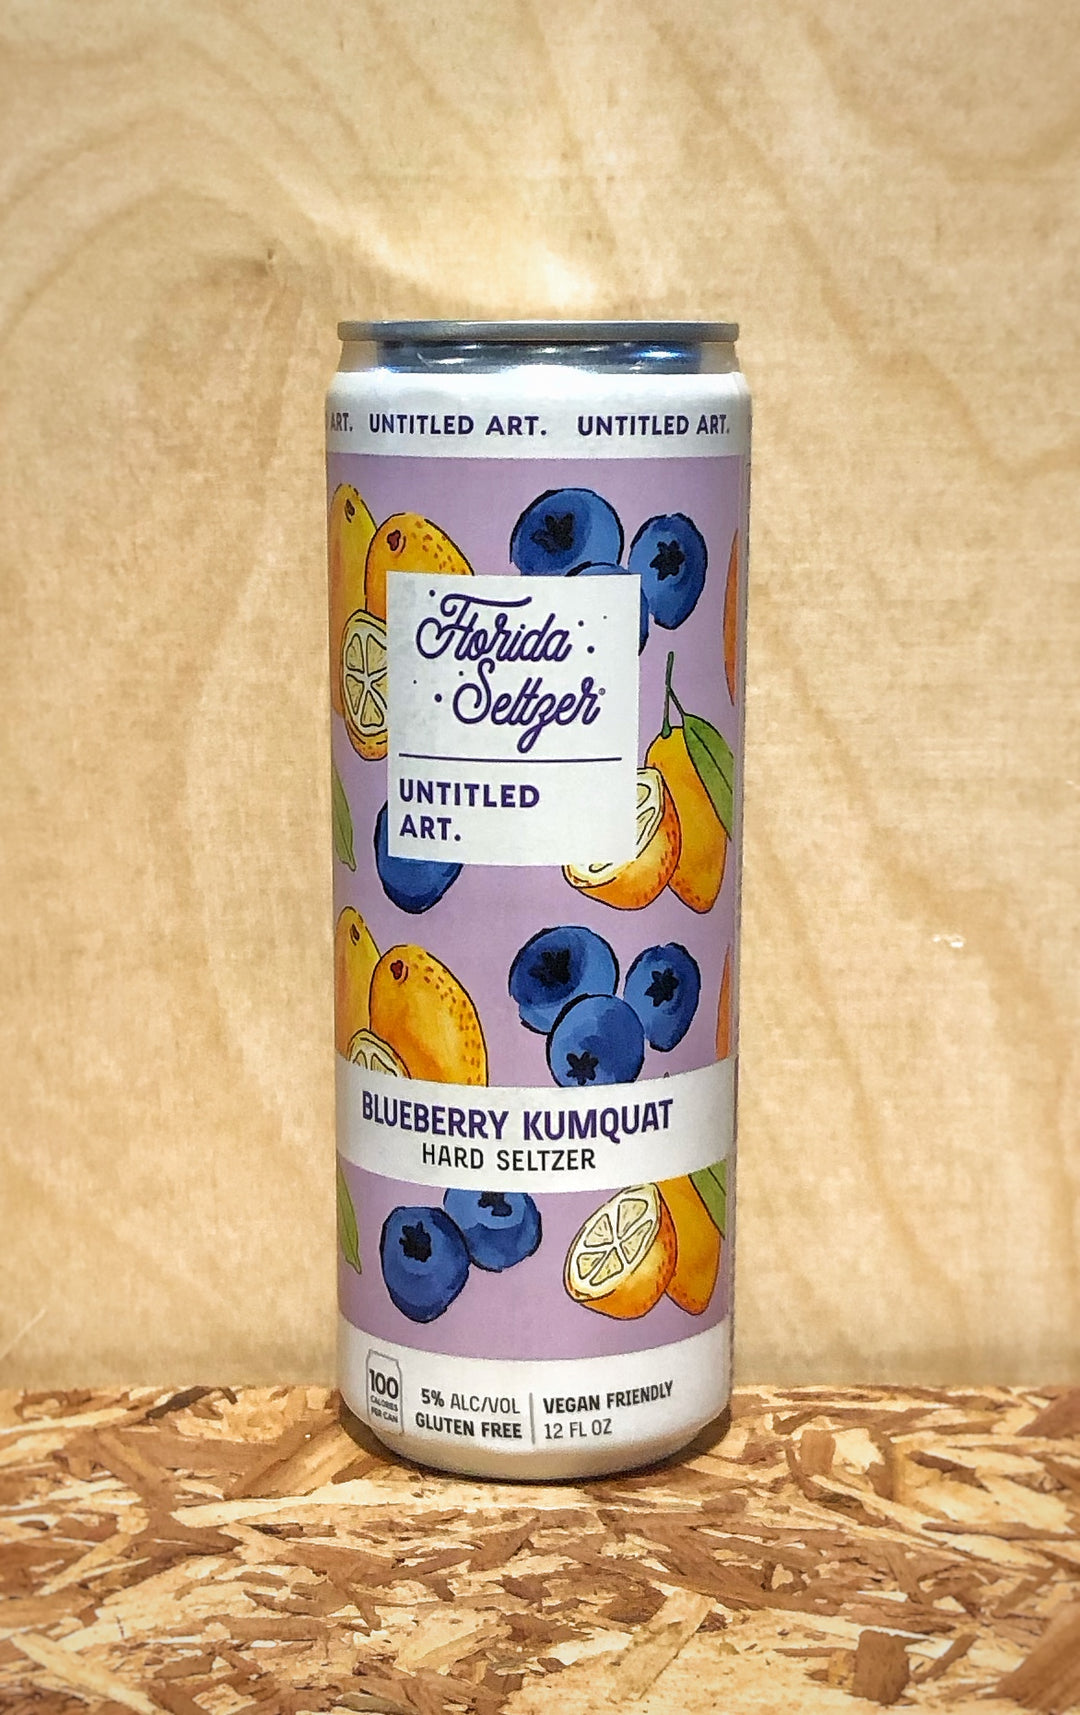 Untitled Art 'Florida Seltzer' Blueberry Kumquat Hard Seltzer (Waunakee, WI)